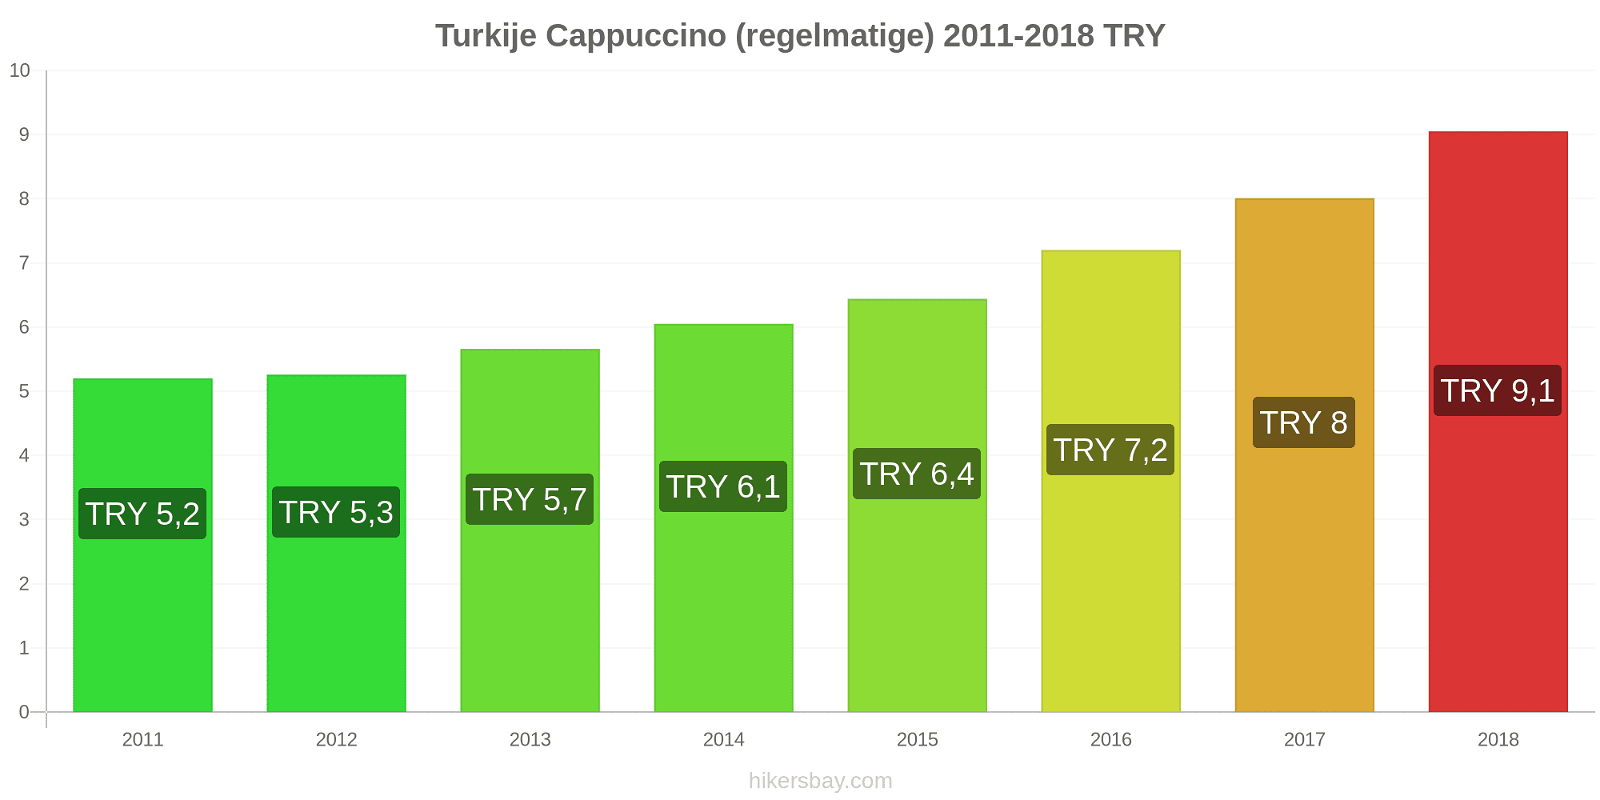 Turkije prijswijzigingen Cappuccino (regulier) hikersbay.com